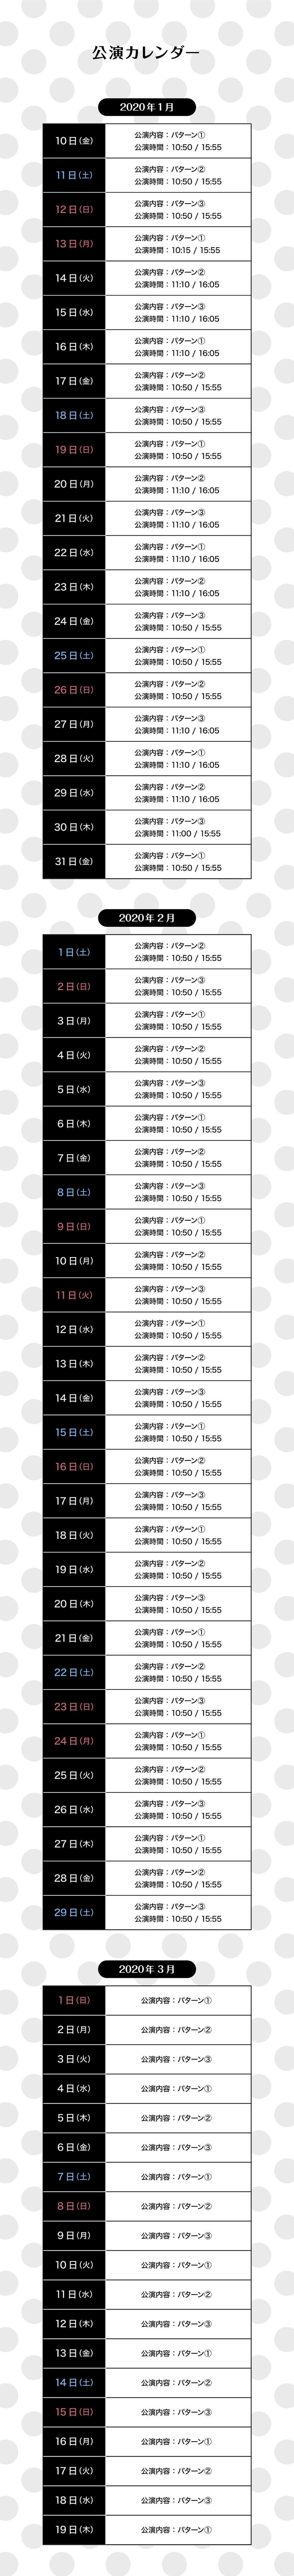 「ベリー・ミニー・リミックス」の公演カレンダー